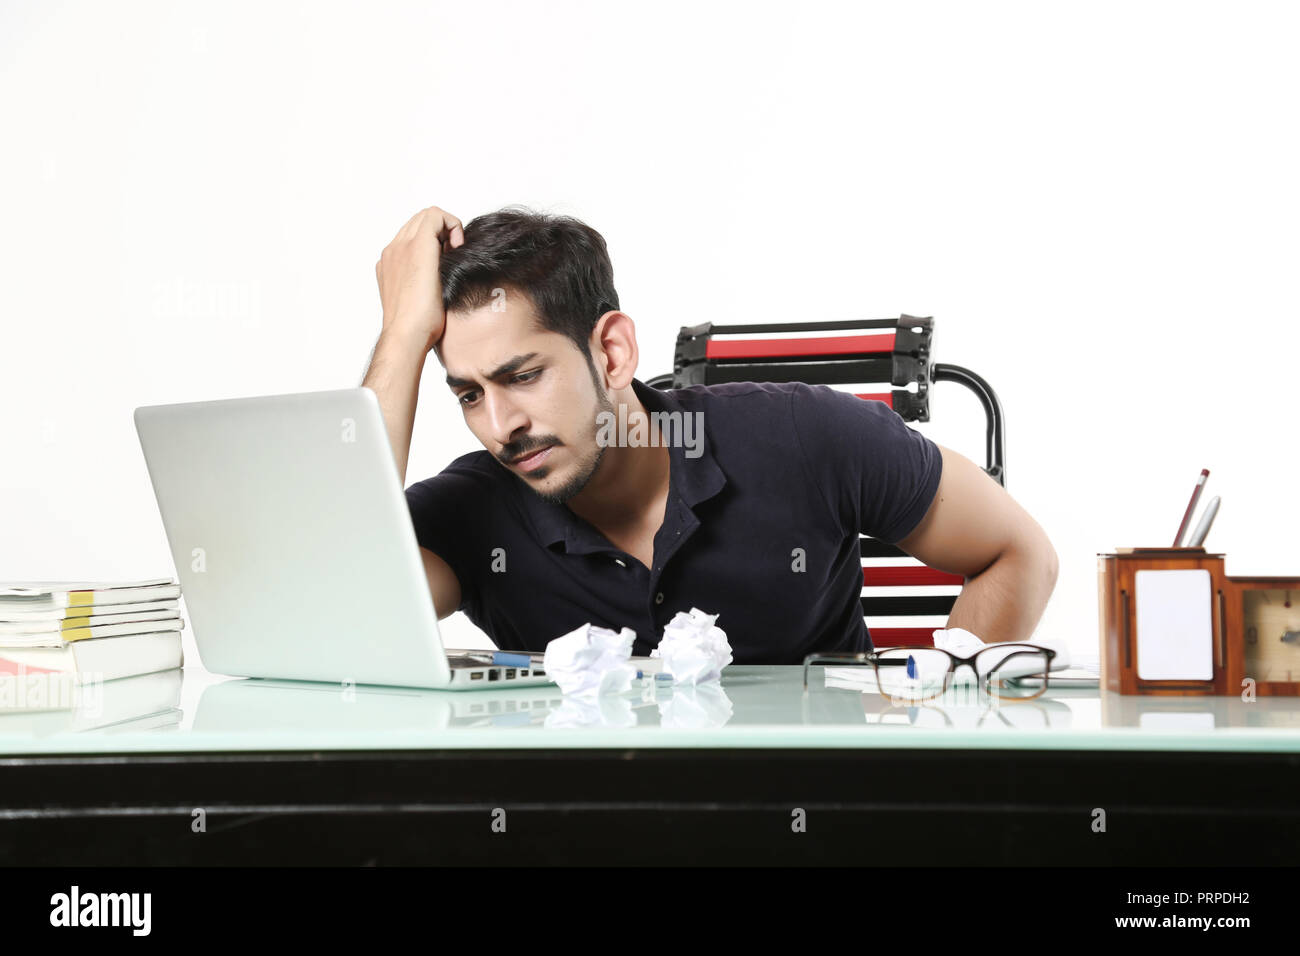 L'homme est à la recherche d'importants travaux de bureau sur un ordinateur portable avec des déchets de papier sur la table dans la cabine. Isolé sur fond blanc. Banque D'Images